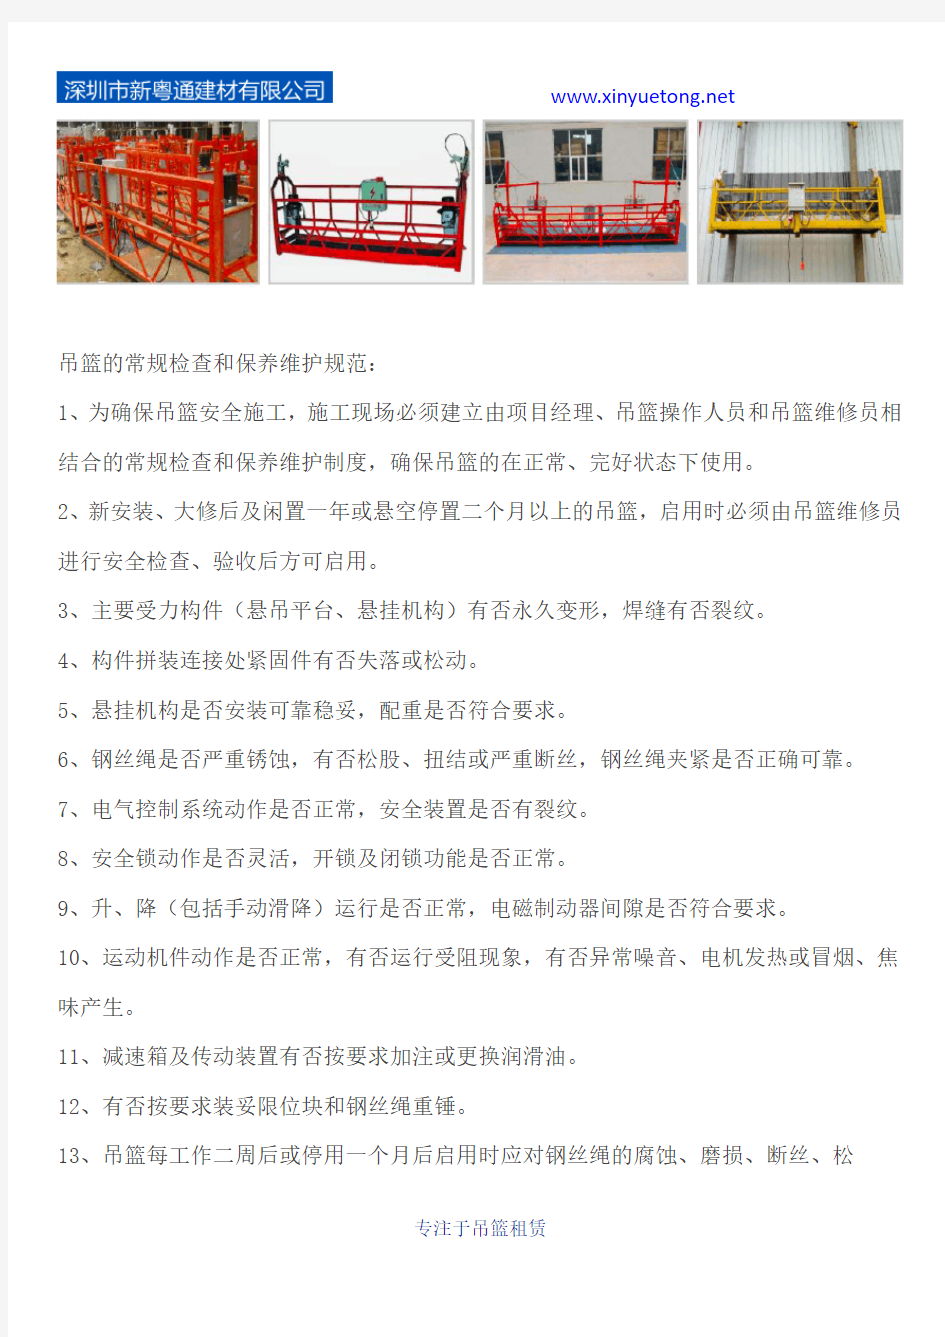 【新粤通吊篮】高空作业吊篮的材料和加工质量要求,深圳哪家吊篮租赁公司好